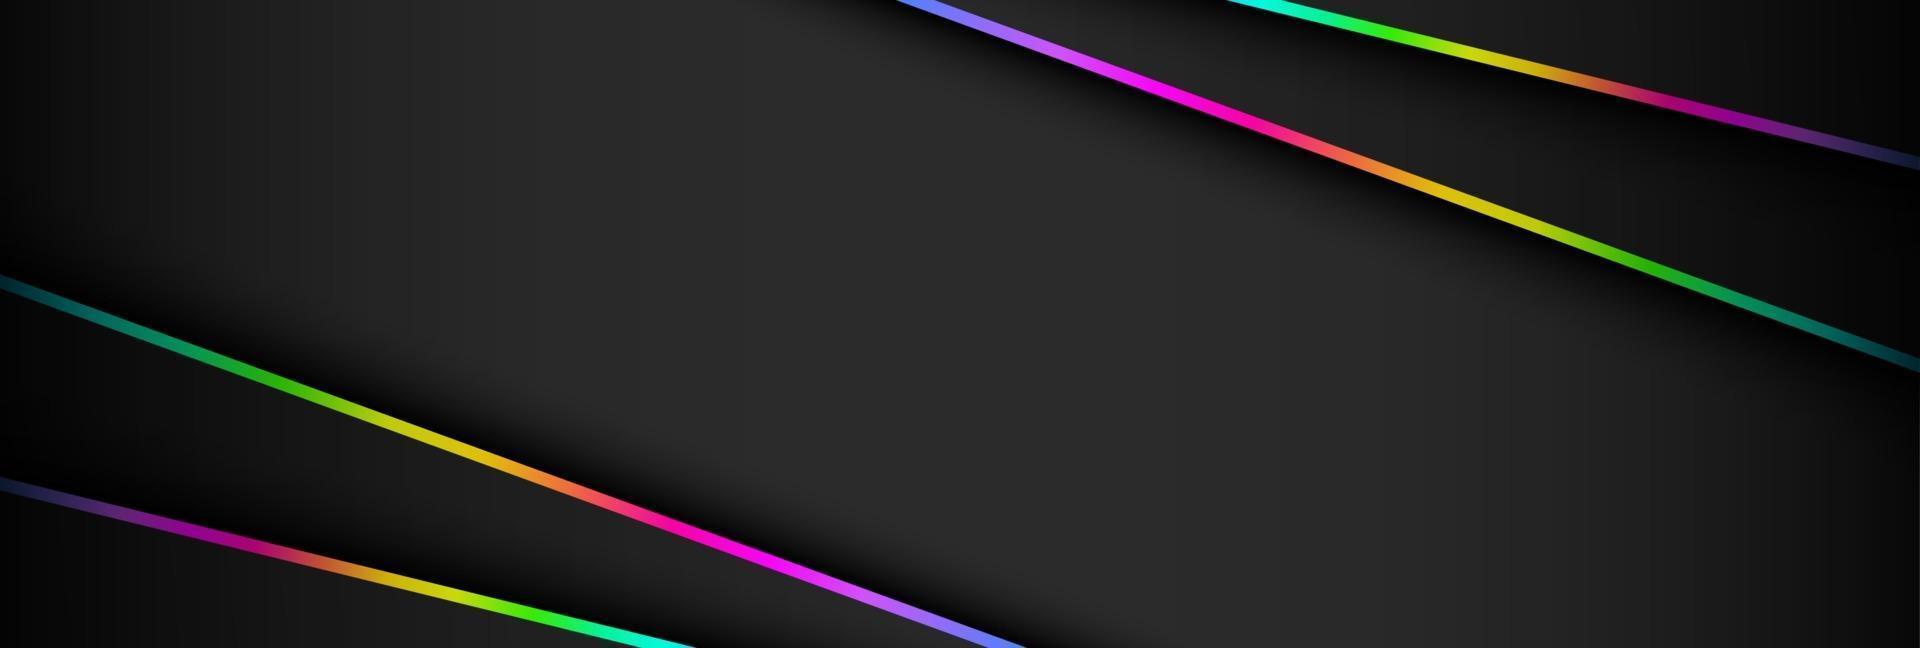 abstrakte futuristische dunkle und RGB-Lichtspielhintergrundvektorillustration vektor